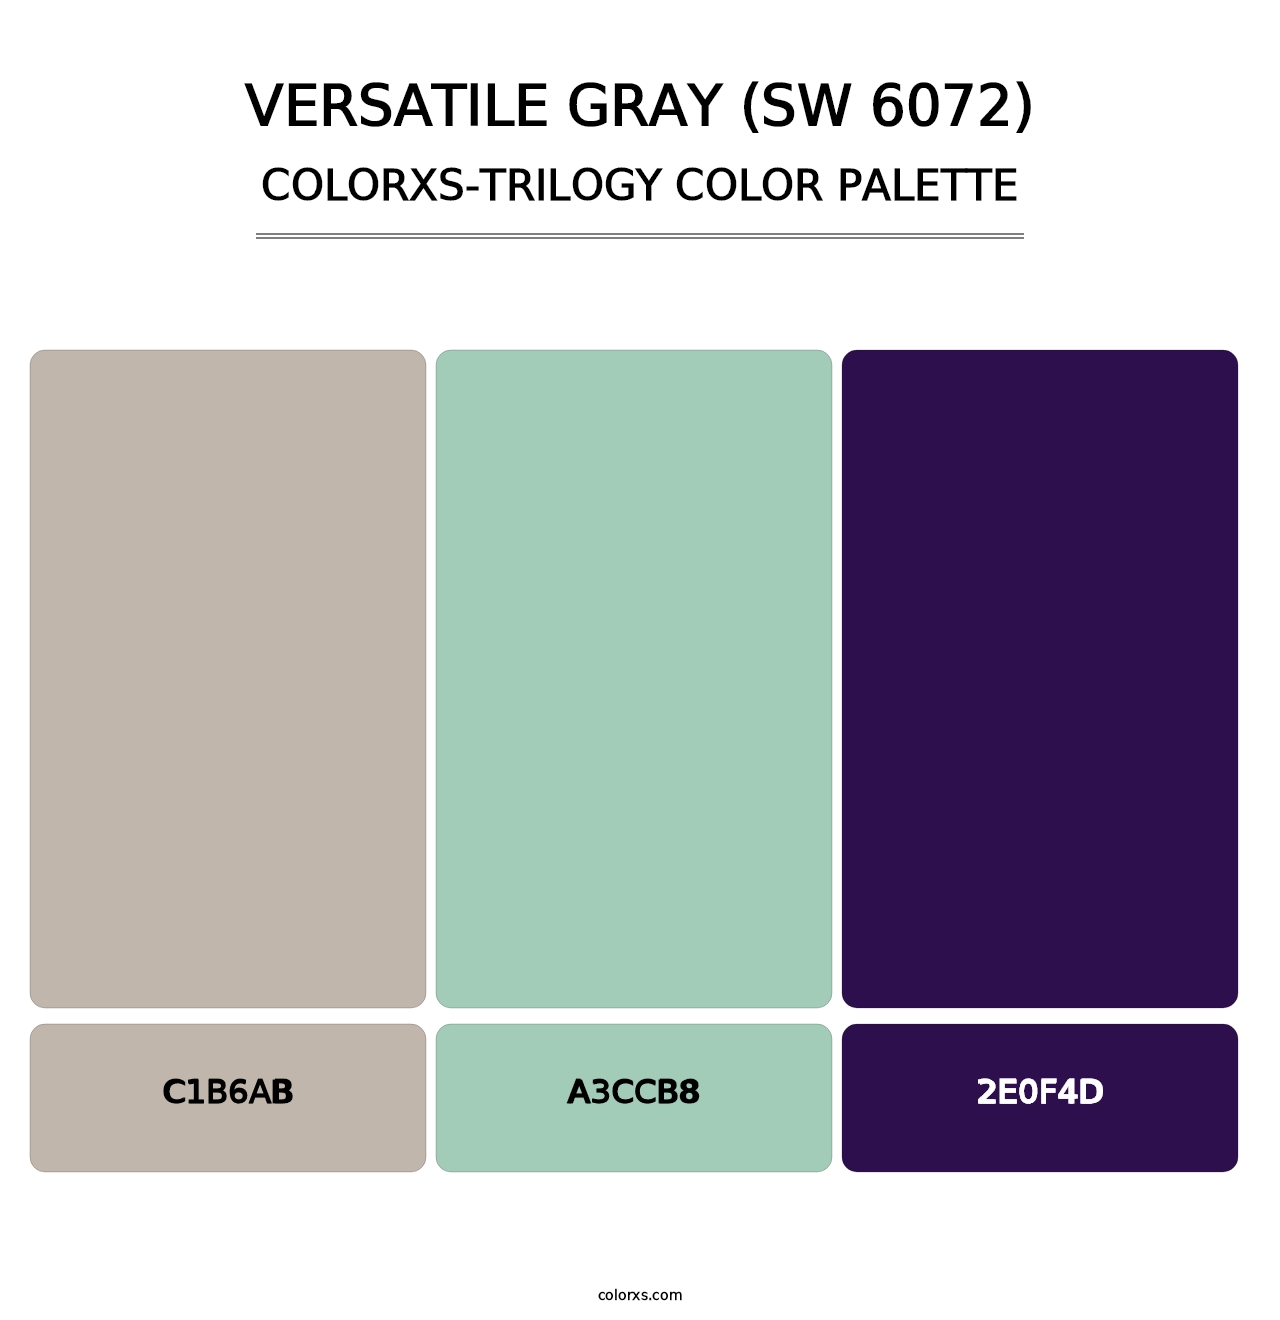 Versatile Gray (SW 6072) - Colorxs Trilogy Palette